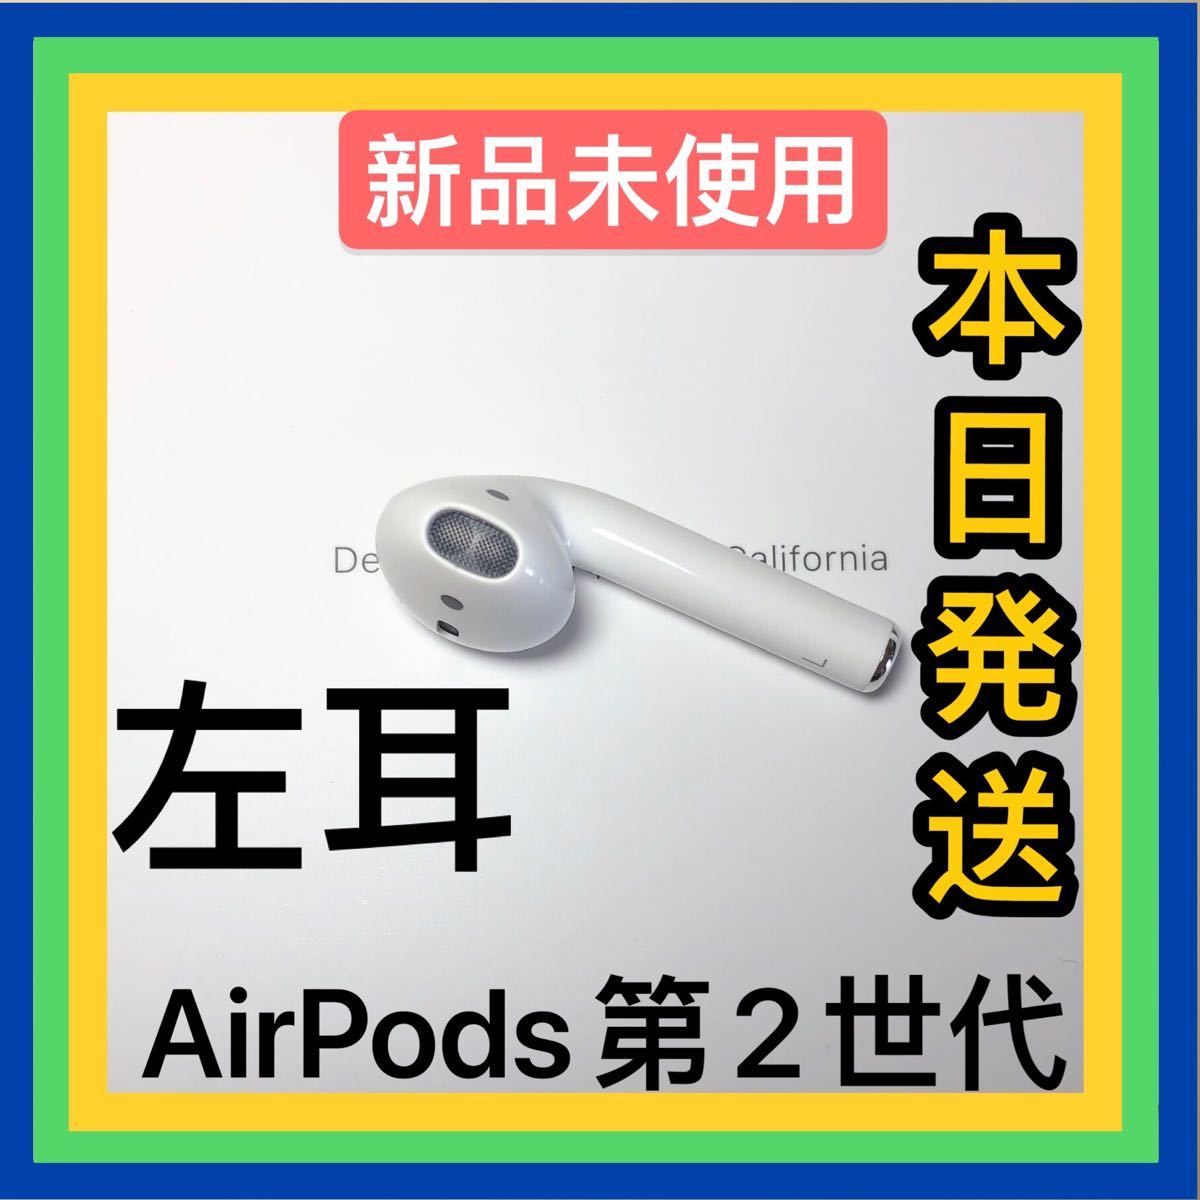 発売モデル 即購入OK Apple air pods 第一世代 充電ケース A1602